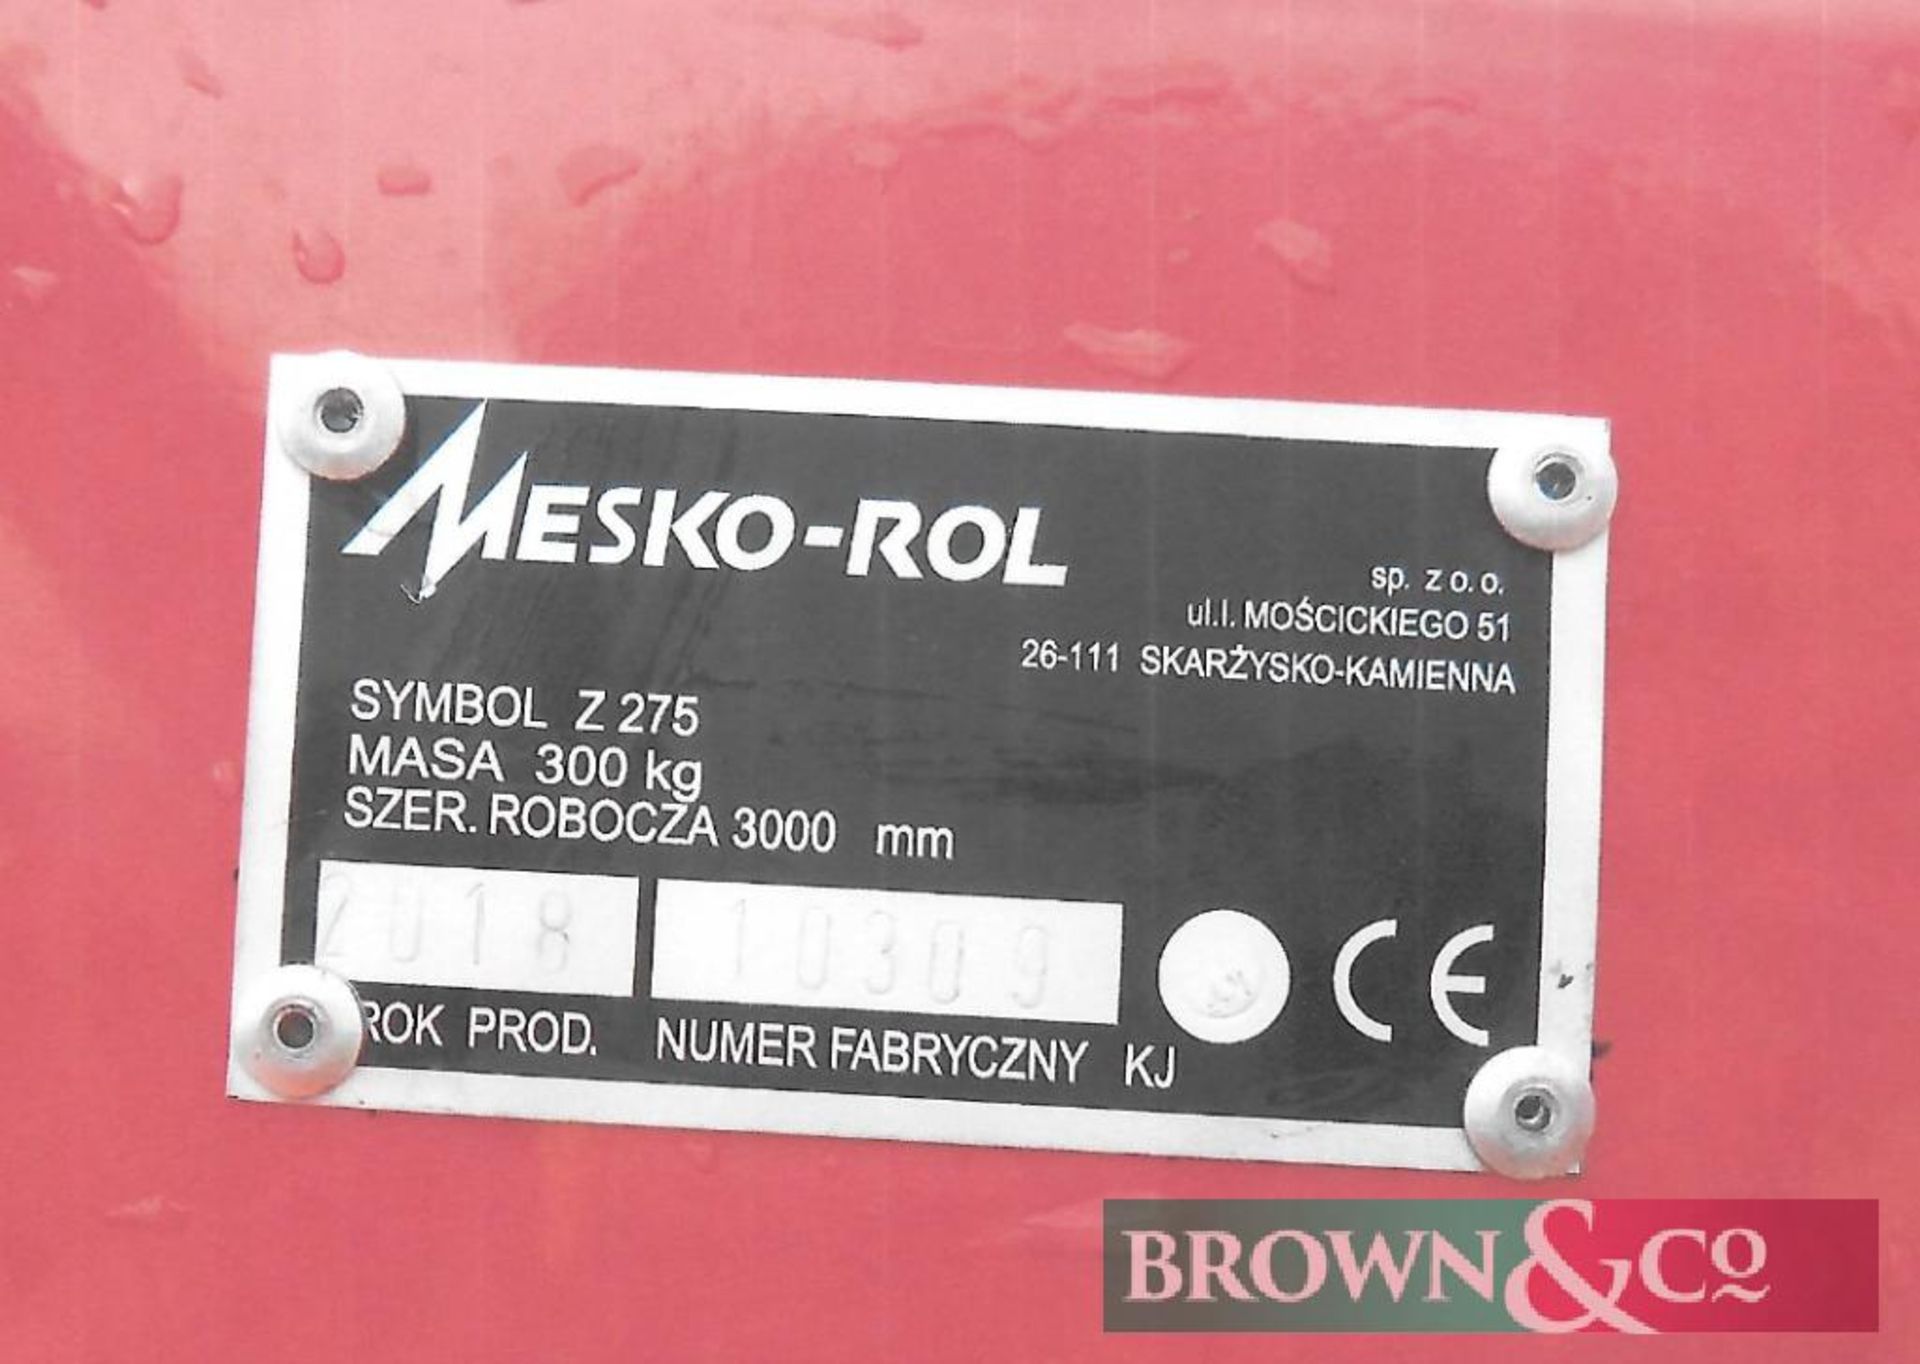 Mesko-Rol Z 275 Carousel Rake-Tedder - Image 3 of 4